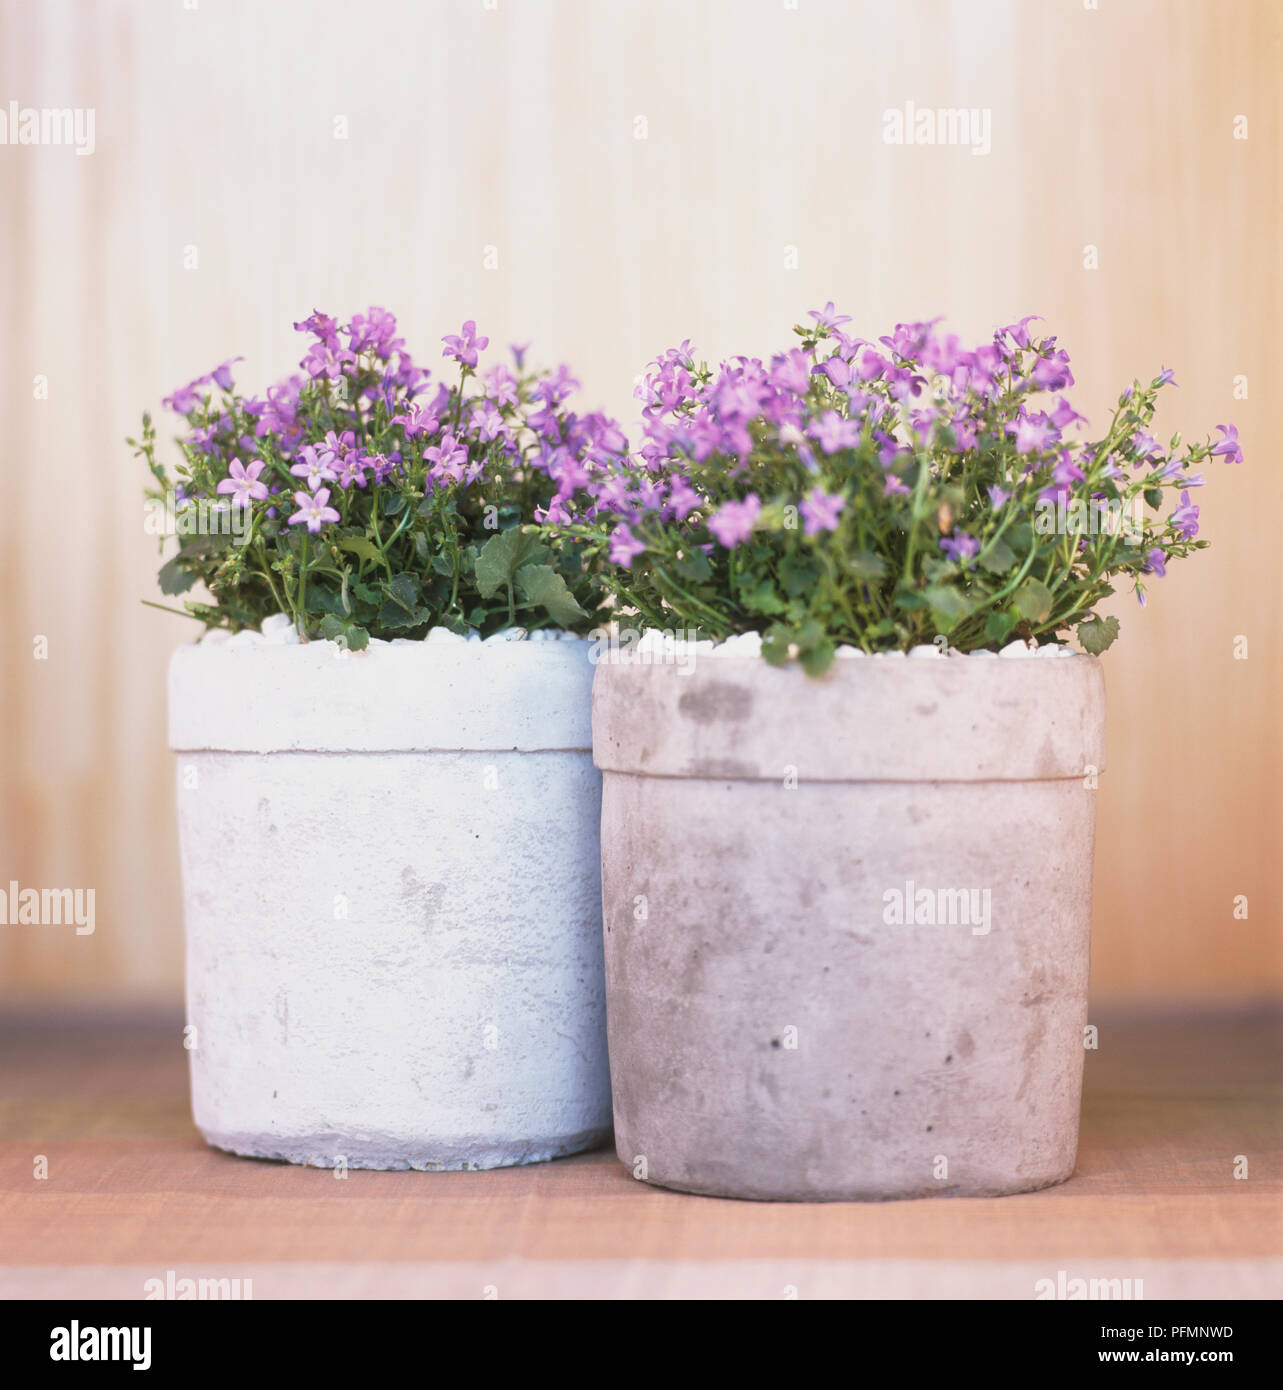 Deux grands pots en béton rempli de faible taille, violet Campanula sp., campanules, vue de face. Banque D'Images